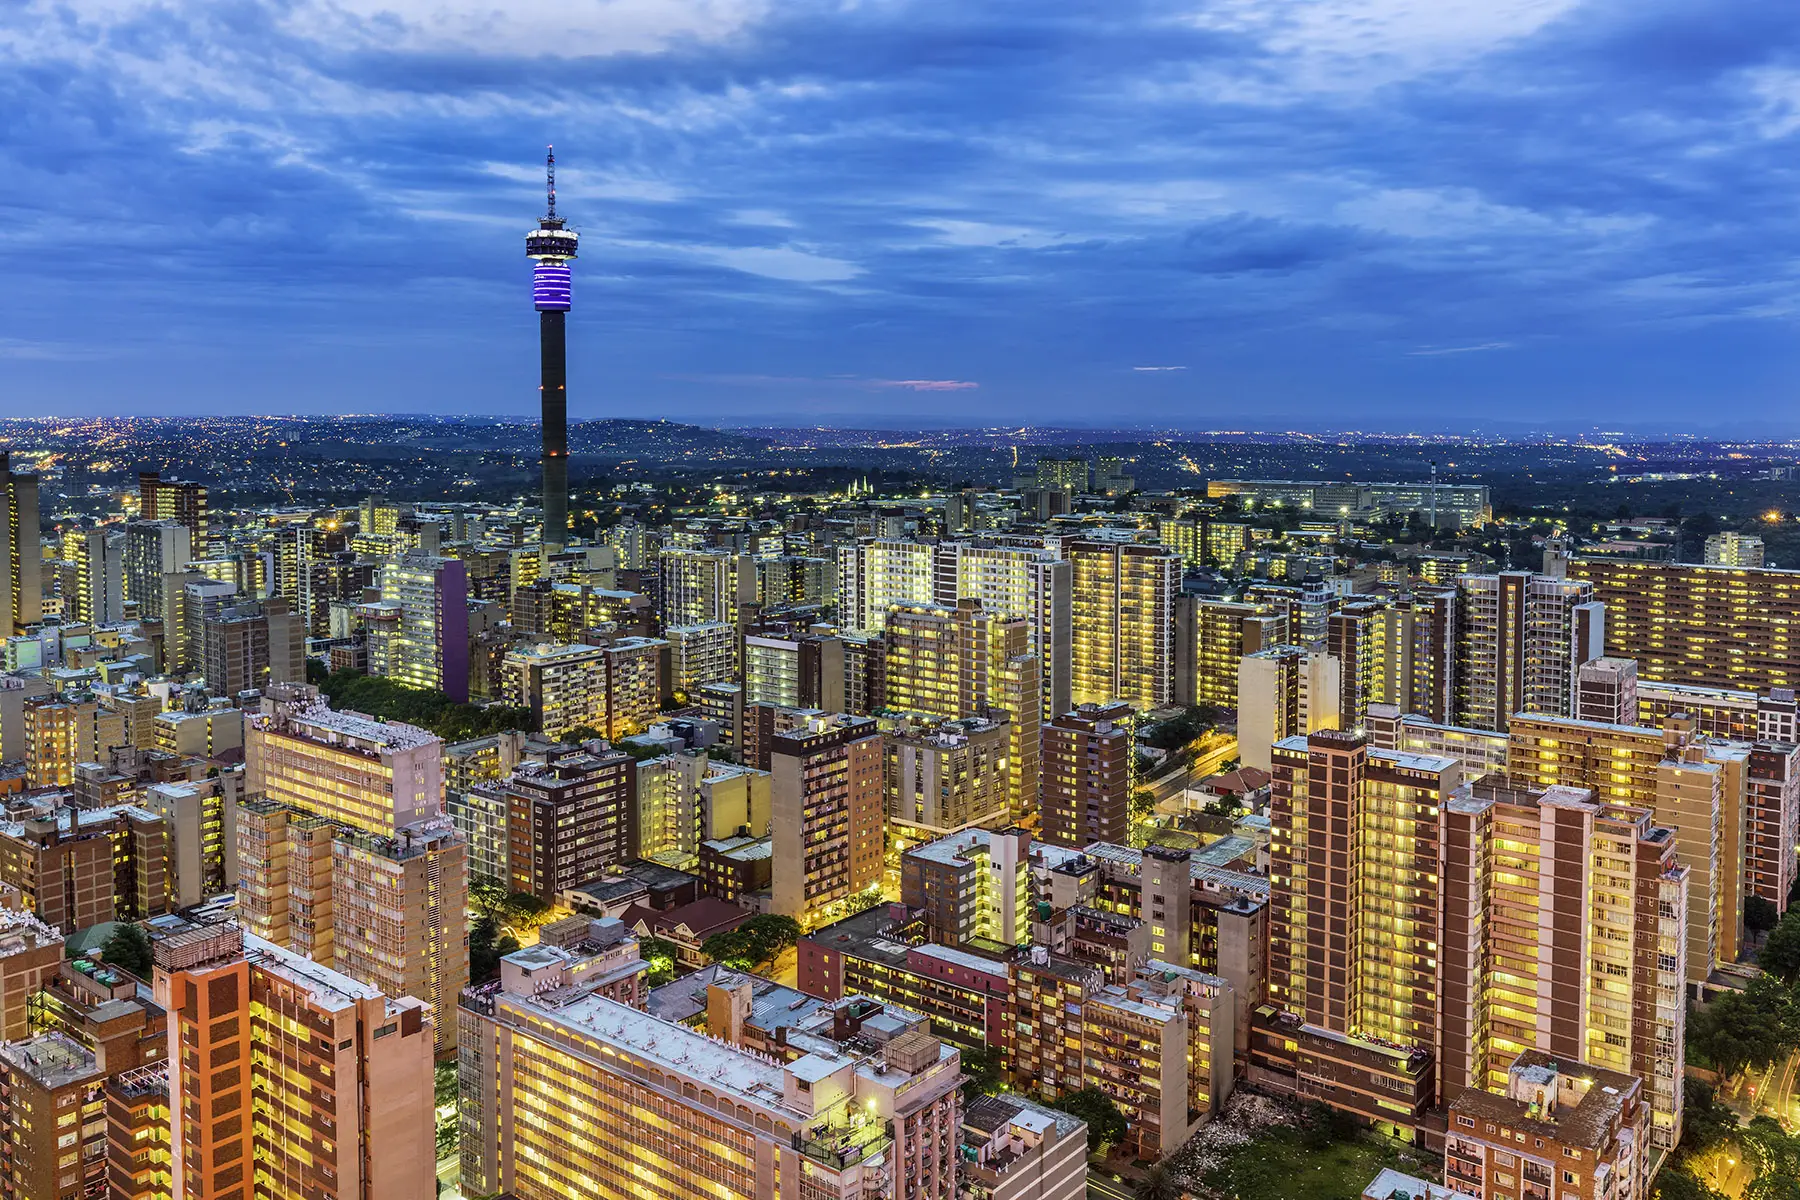 The Johannesburg skyline at dusk